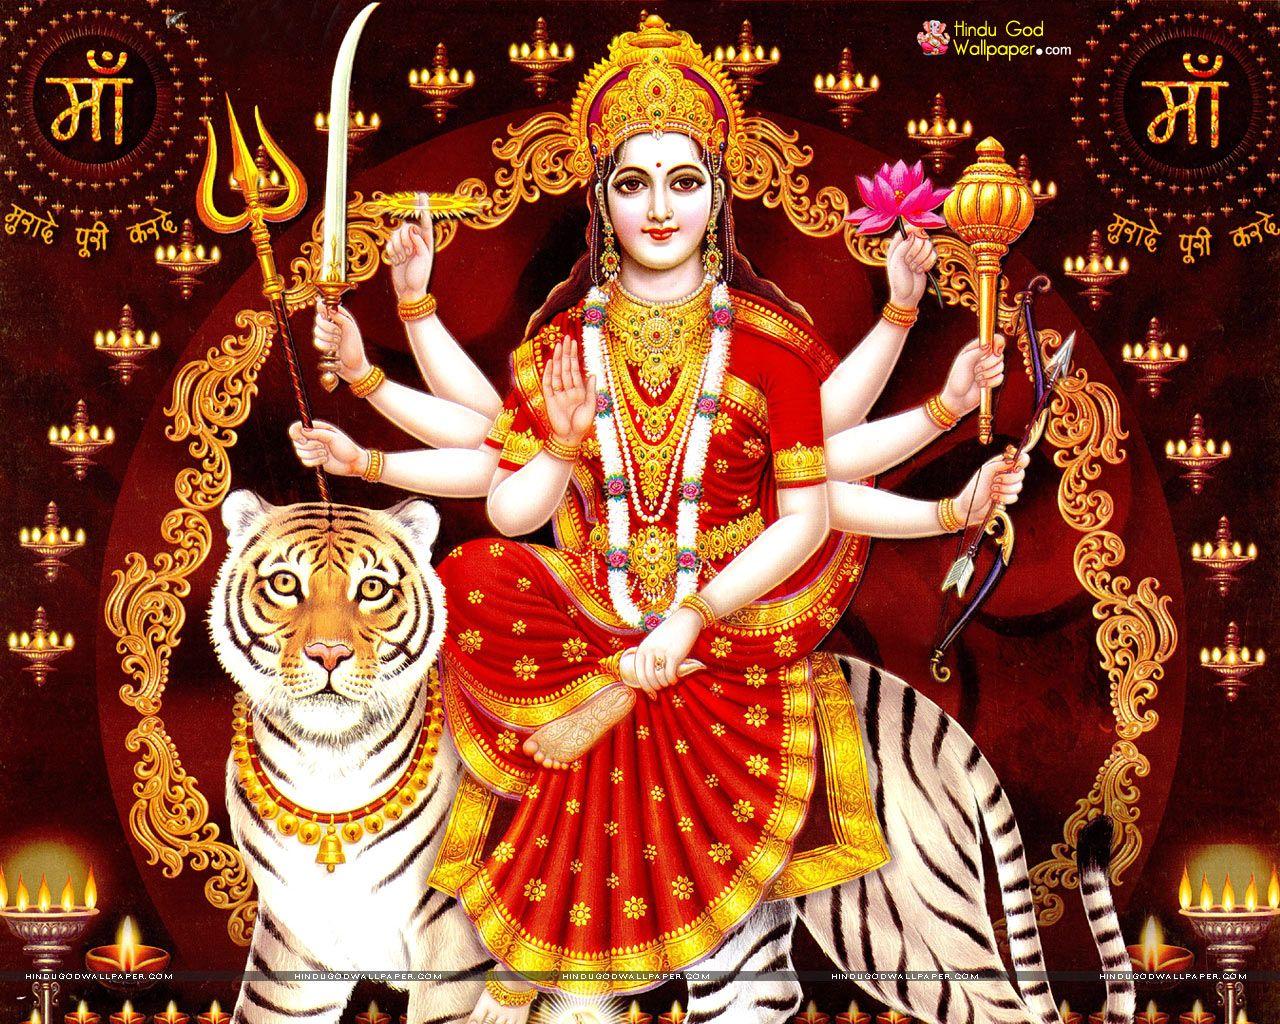 Vaishno devi. Durga picture, Vaishno devi, Durga